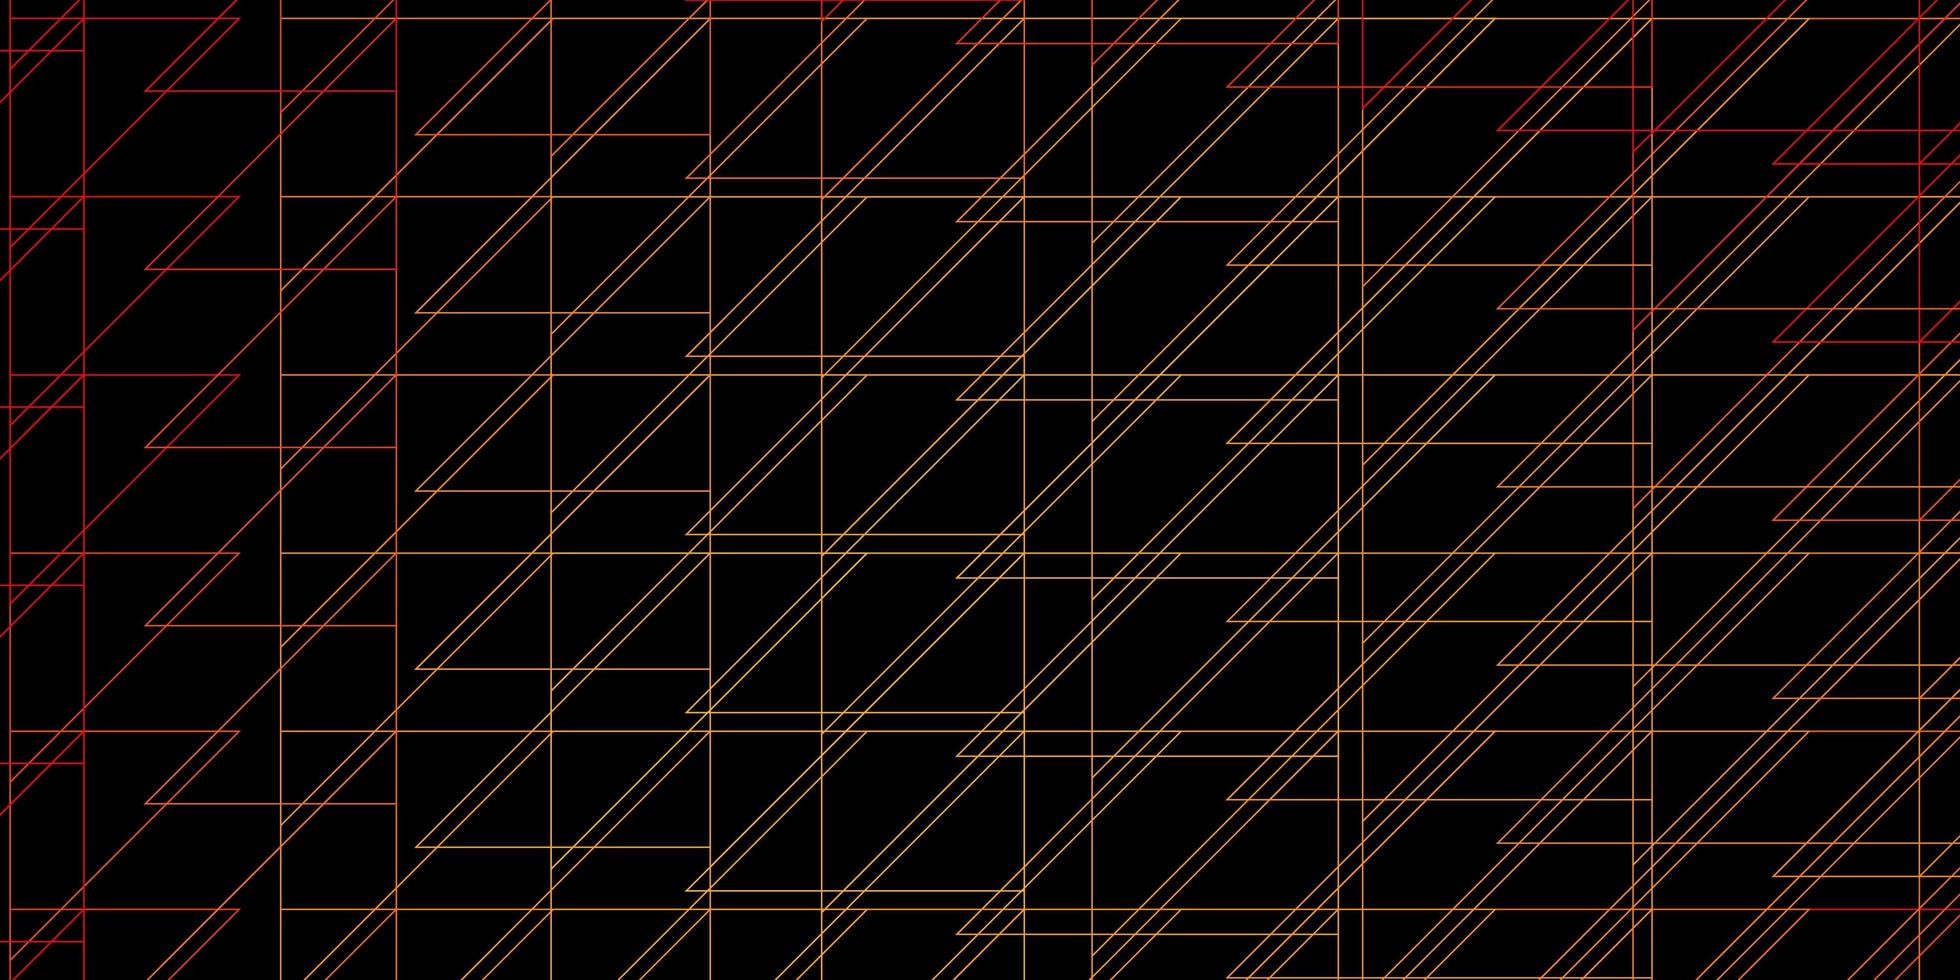 Telón de fondo de vector naranja oscuro con líneas. diseño abstracto degradado en estilo simple con líneas nítidas. patrón para anuncios, comerciales.